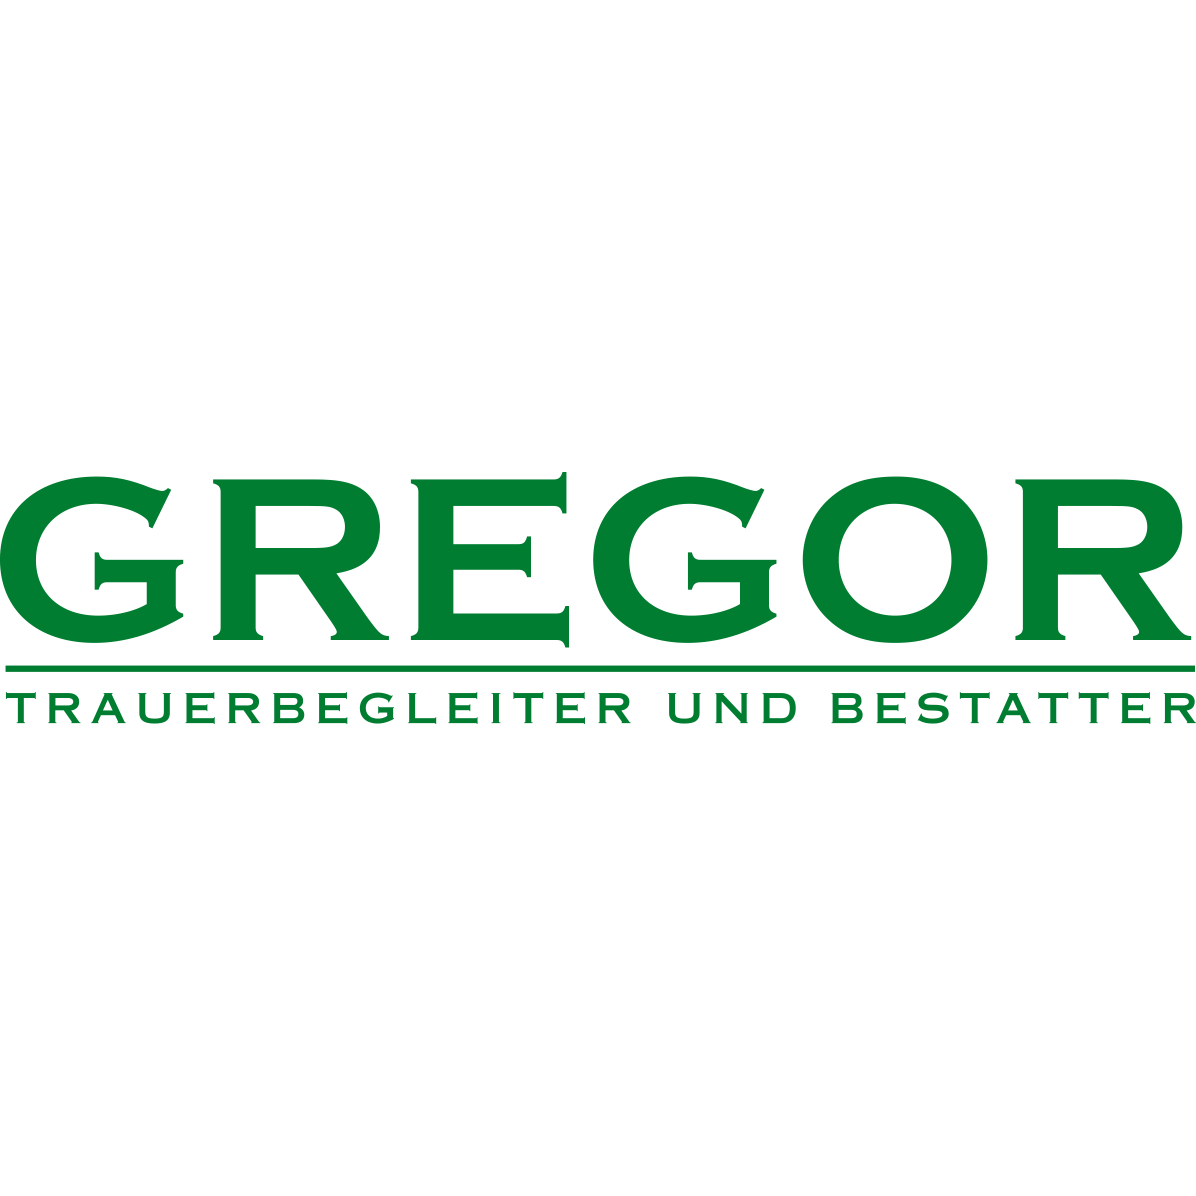 Logo Trauerbegleitung und Bestattung Jürgen Gregor GmbH in Heddesheim